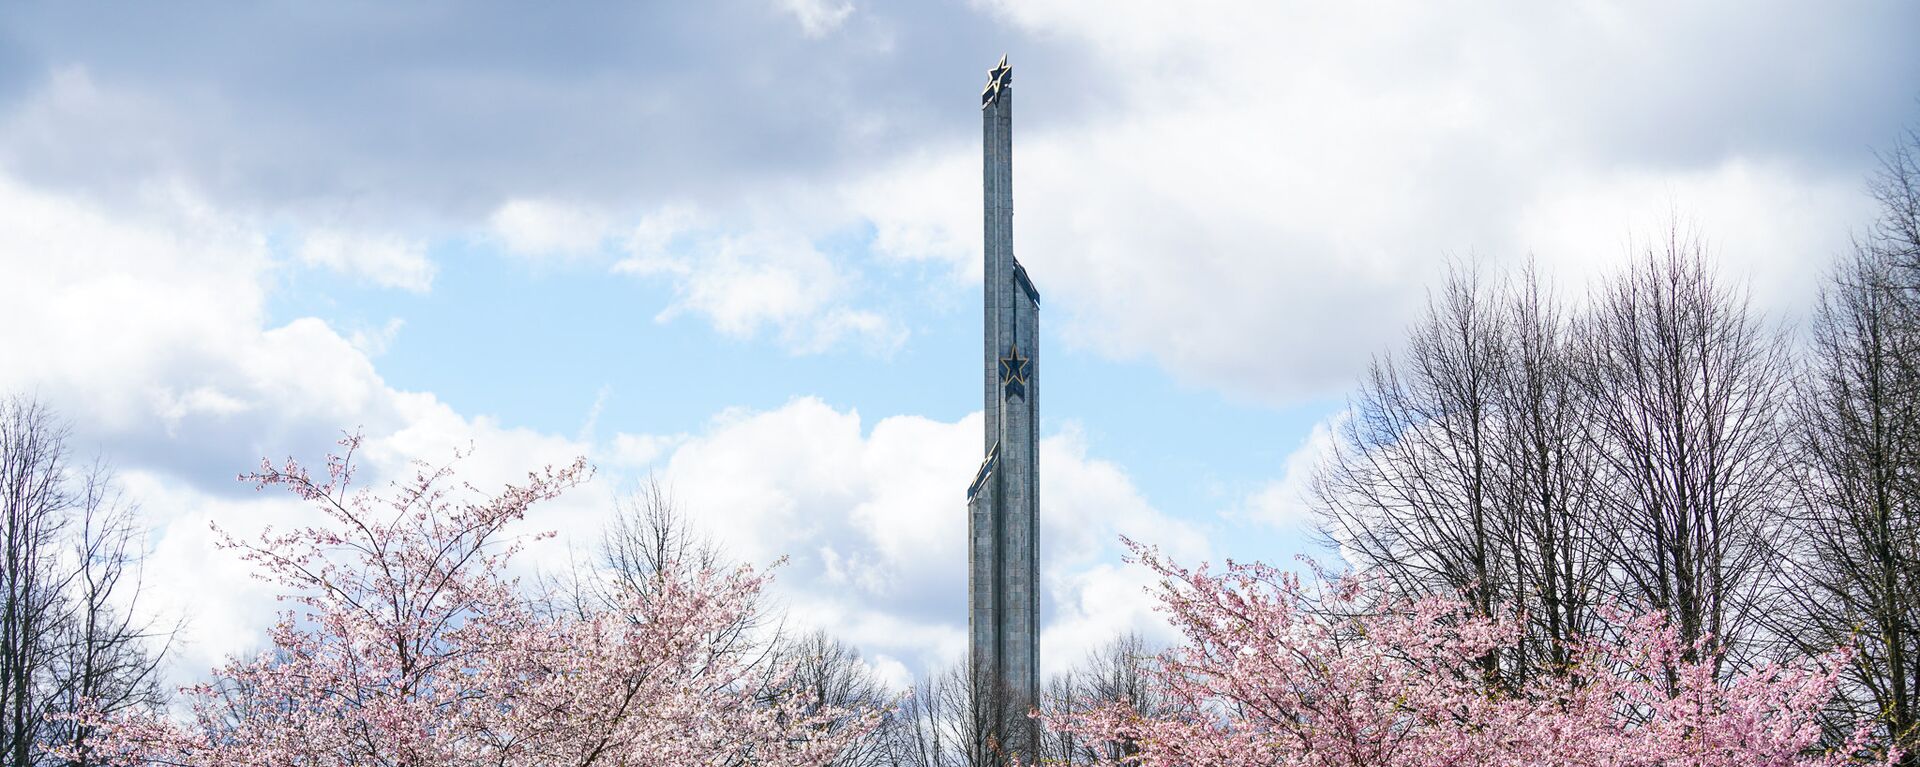 Памятник Освободителям и цветущая сакура в Парке Победы в Риге - Sputnik Латвия, 1920, 01.05.2021